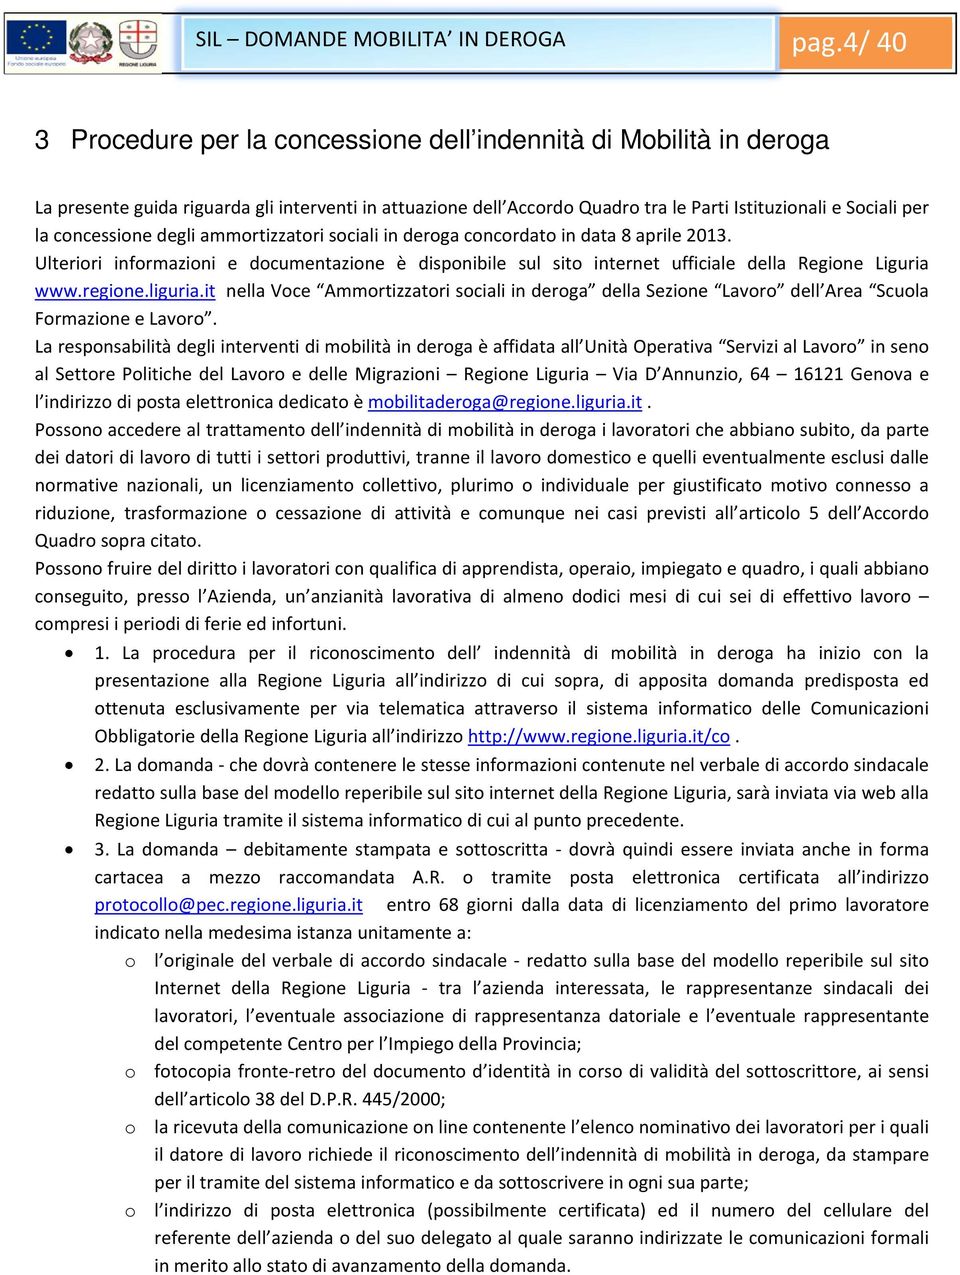 concessione degli ammortizzatori sociali in deroga concordato in data 8 aprile 2013. Ulteriori informazioni e documentazione è disponibile sul sito internet ufficiale della Regione Liguria www.